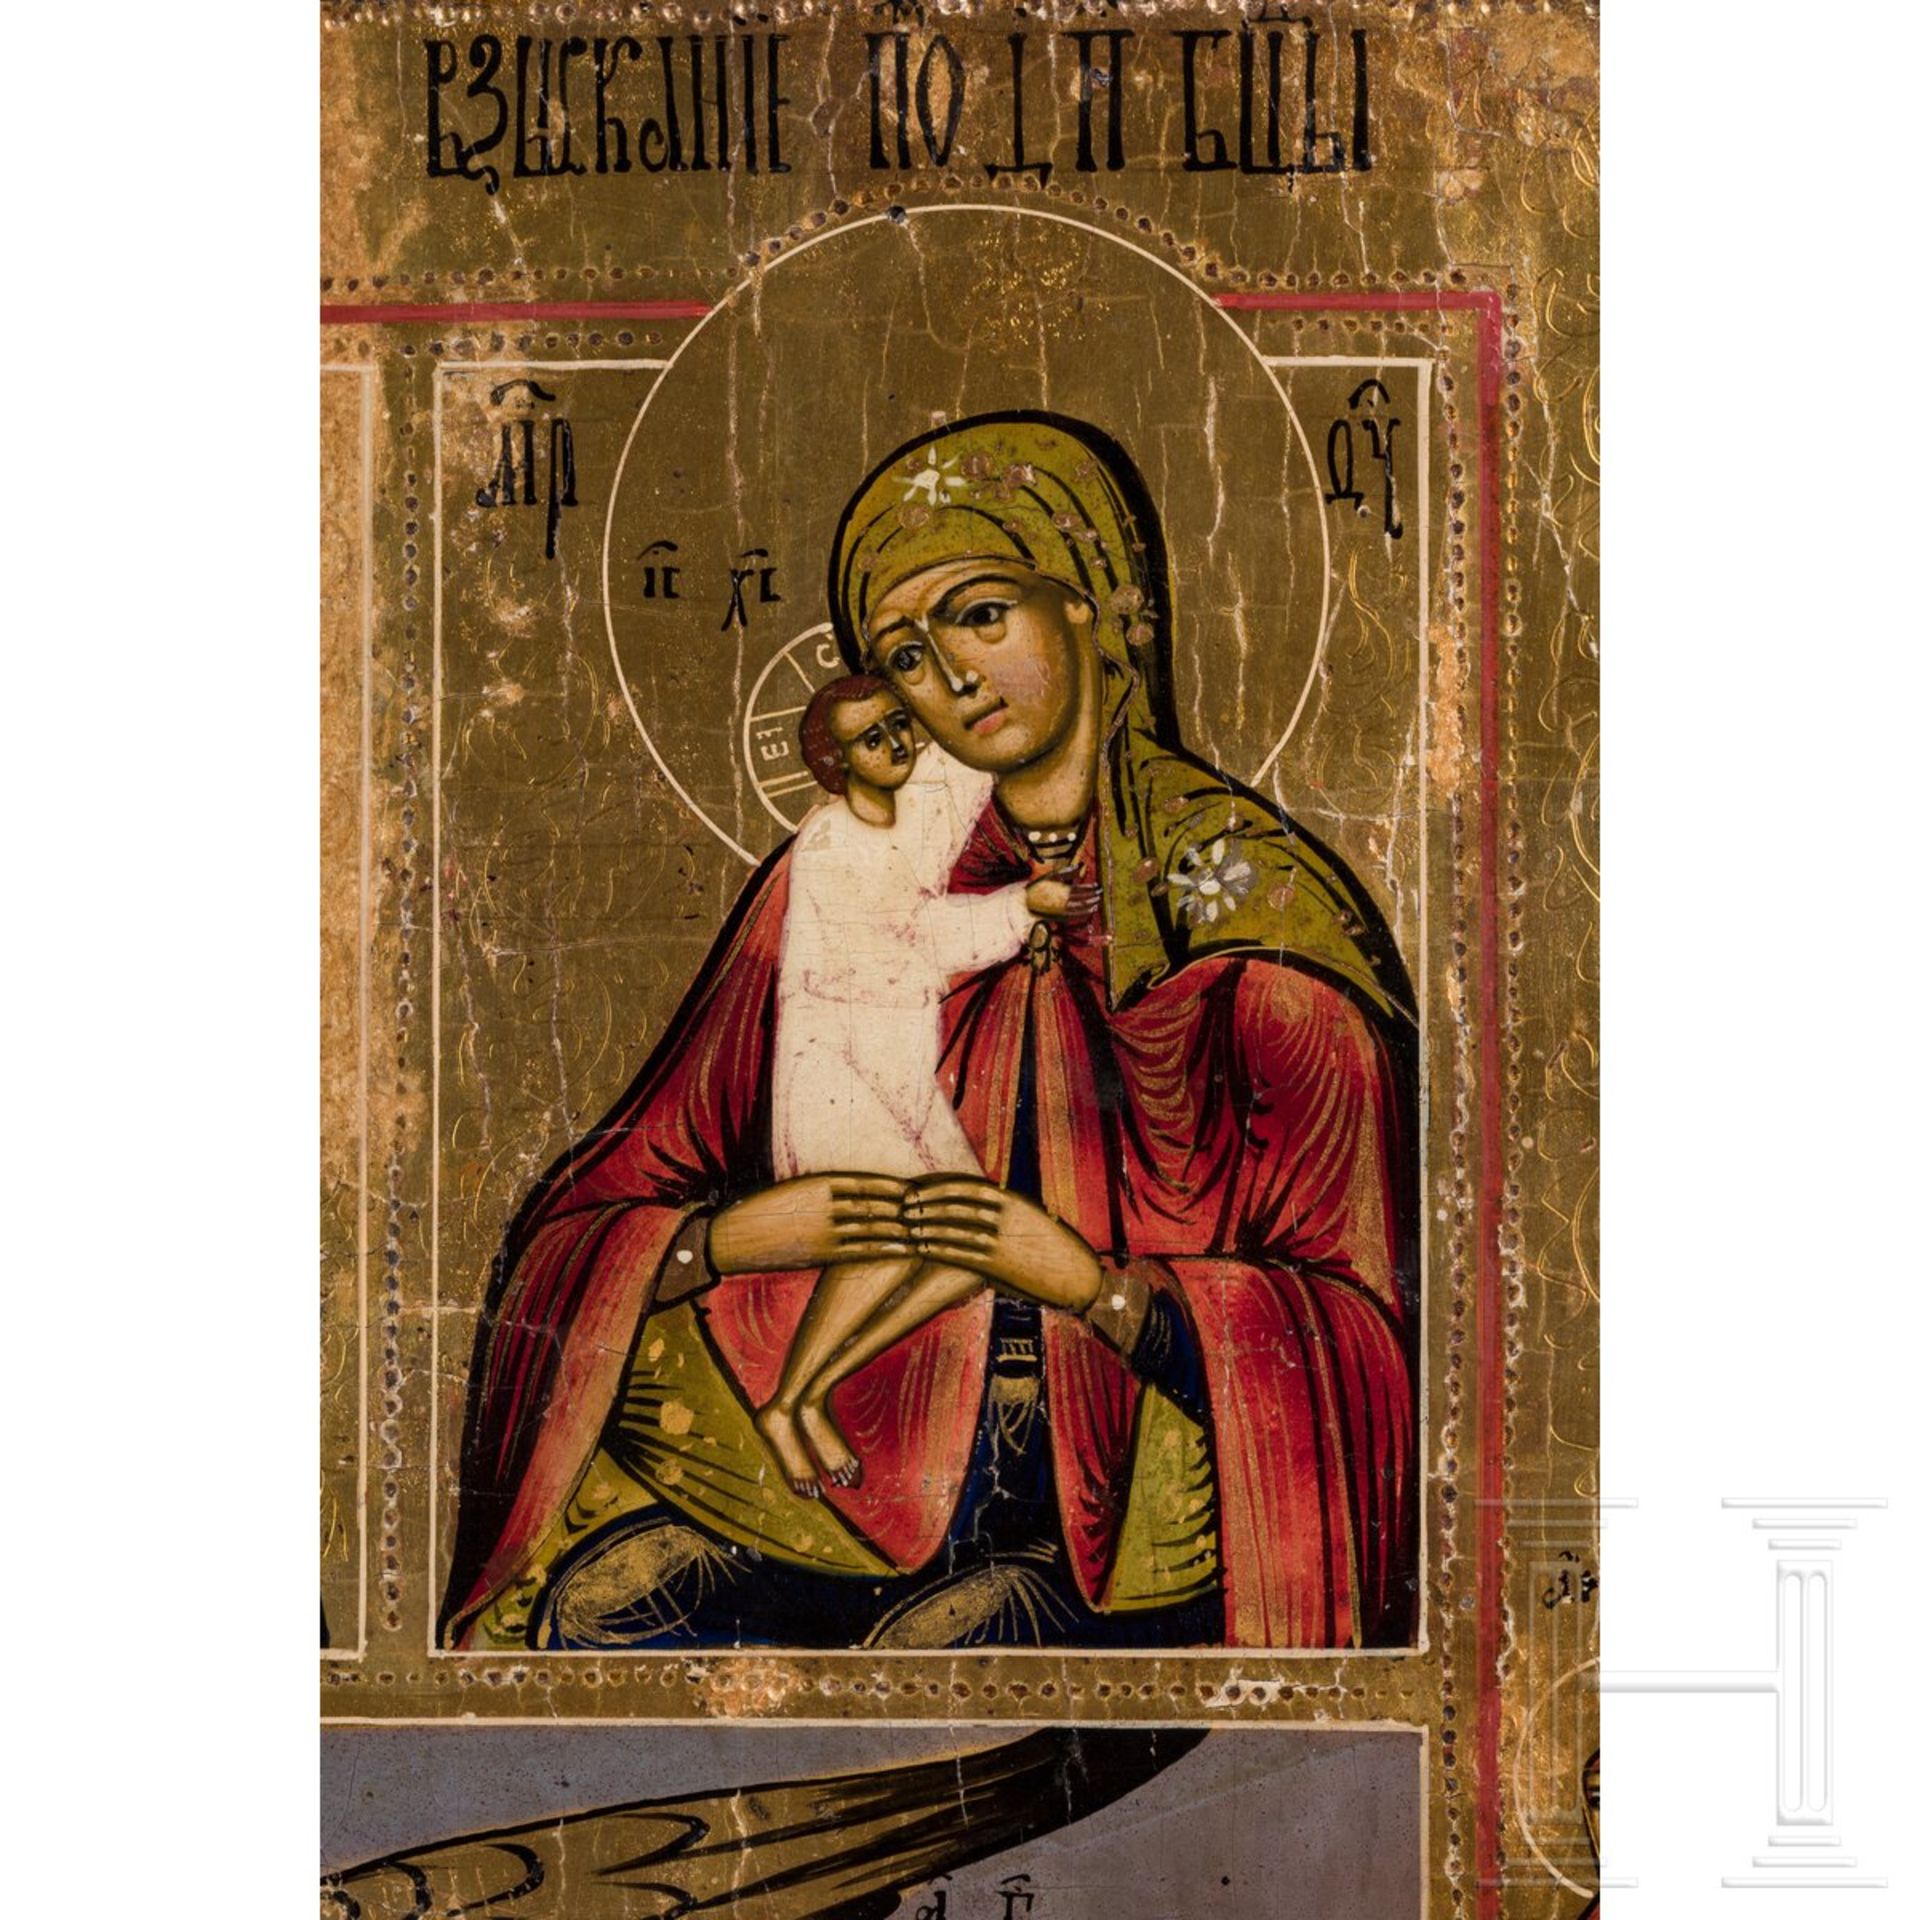 Große Mehrfelderikone mit der Schutzmantel-Madonna, Russland, Vetka, 2. Hälfte 19. Jhdt. - Image 4 of 4